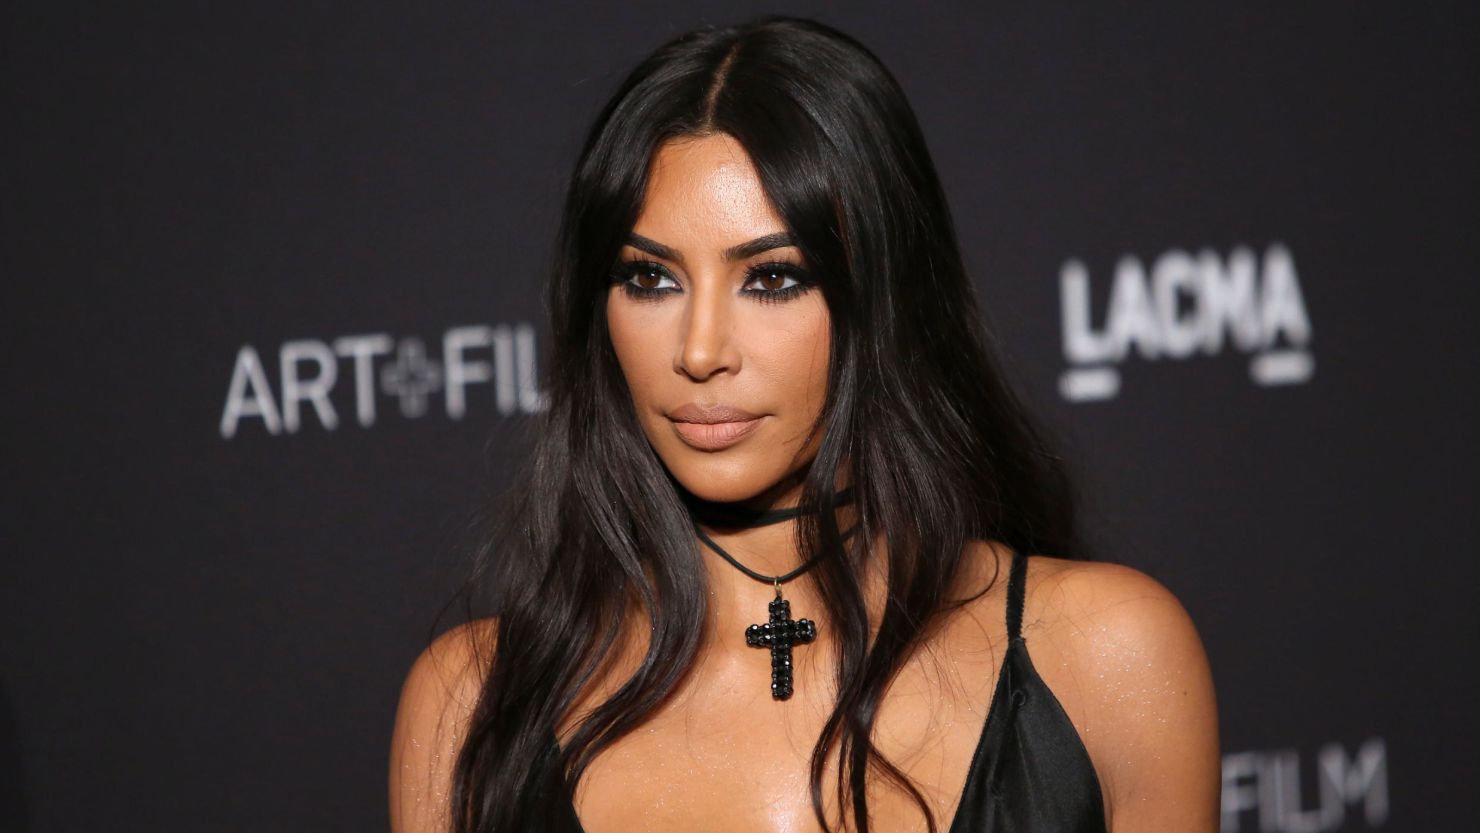 Kim Kardashian West has helped free 17 inmates in 90 days